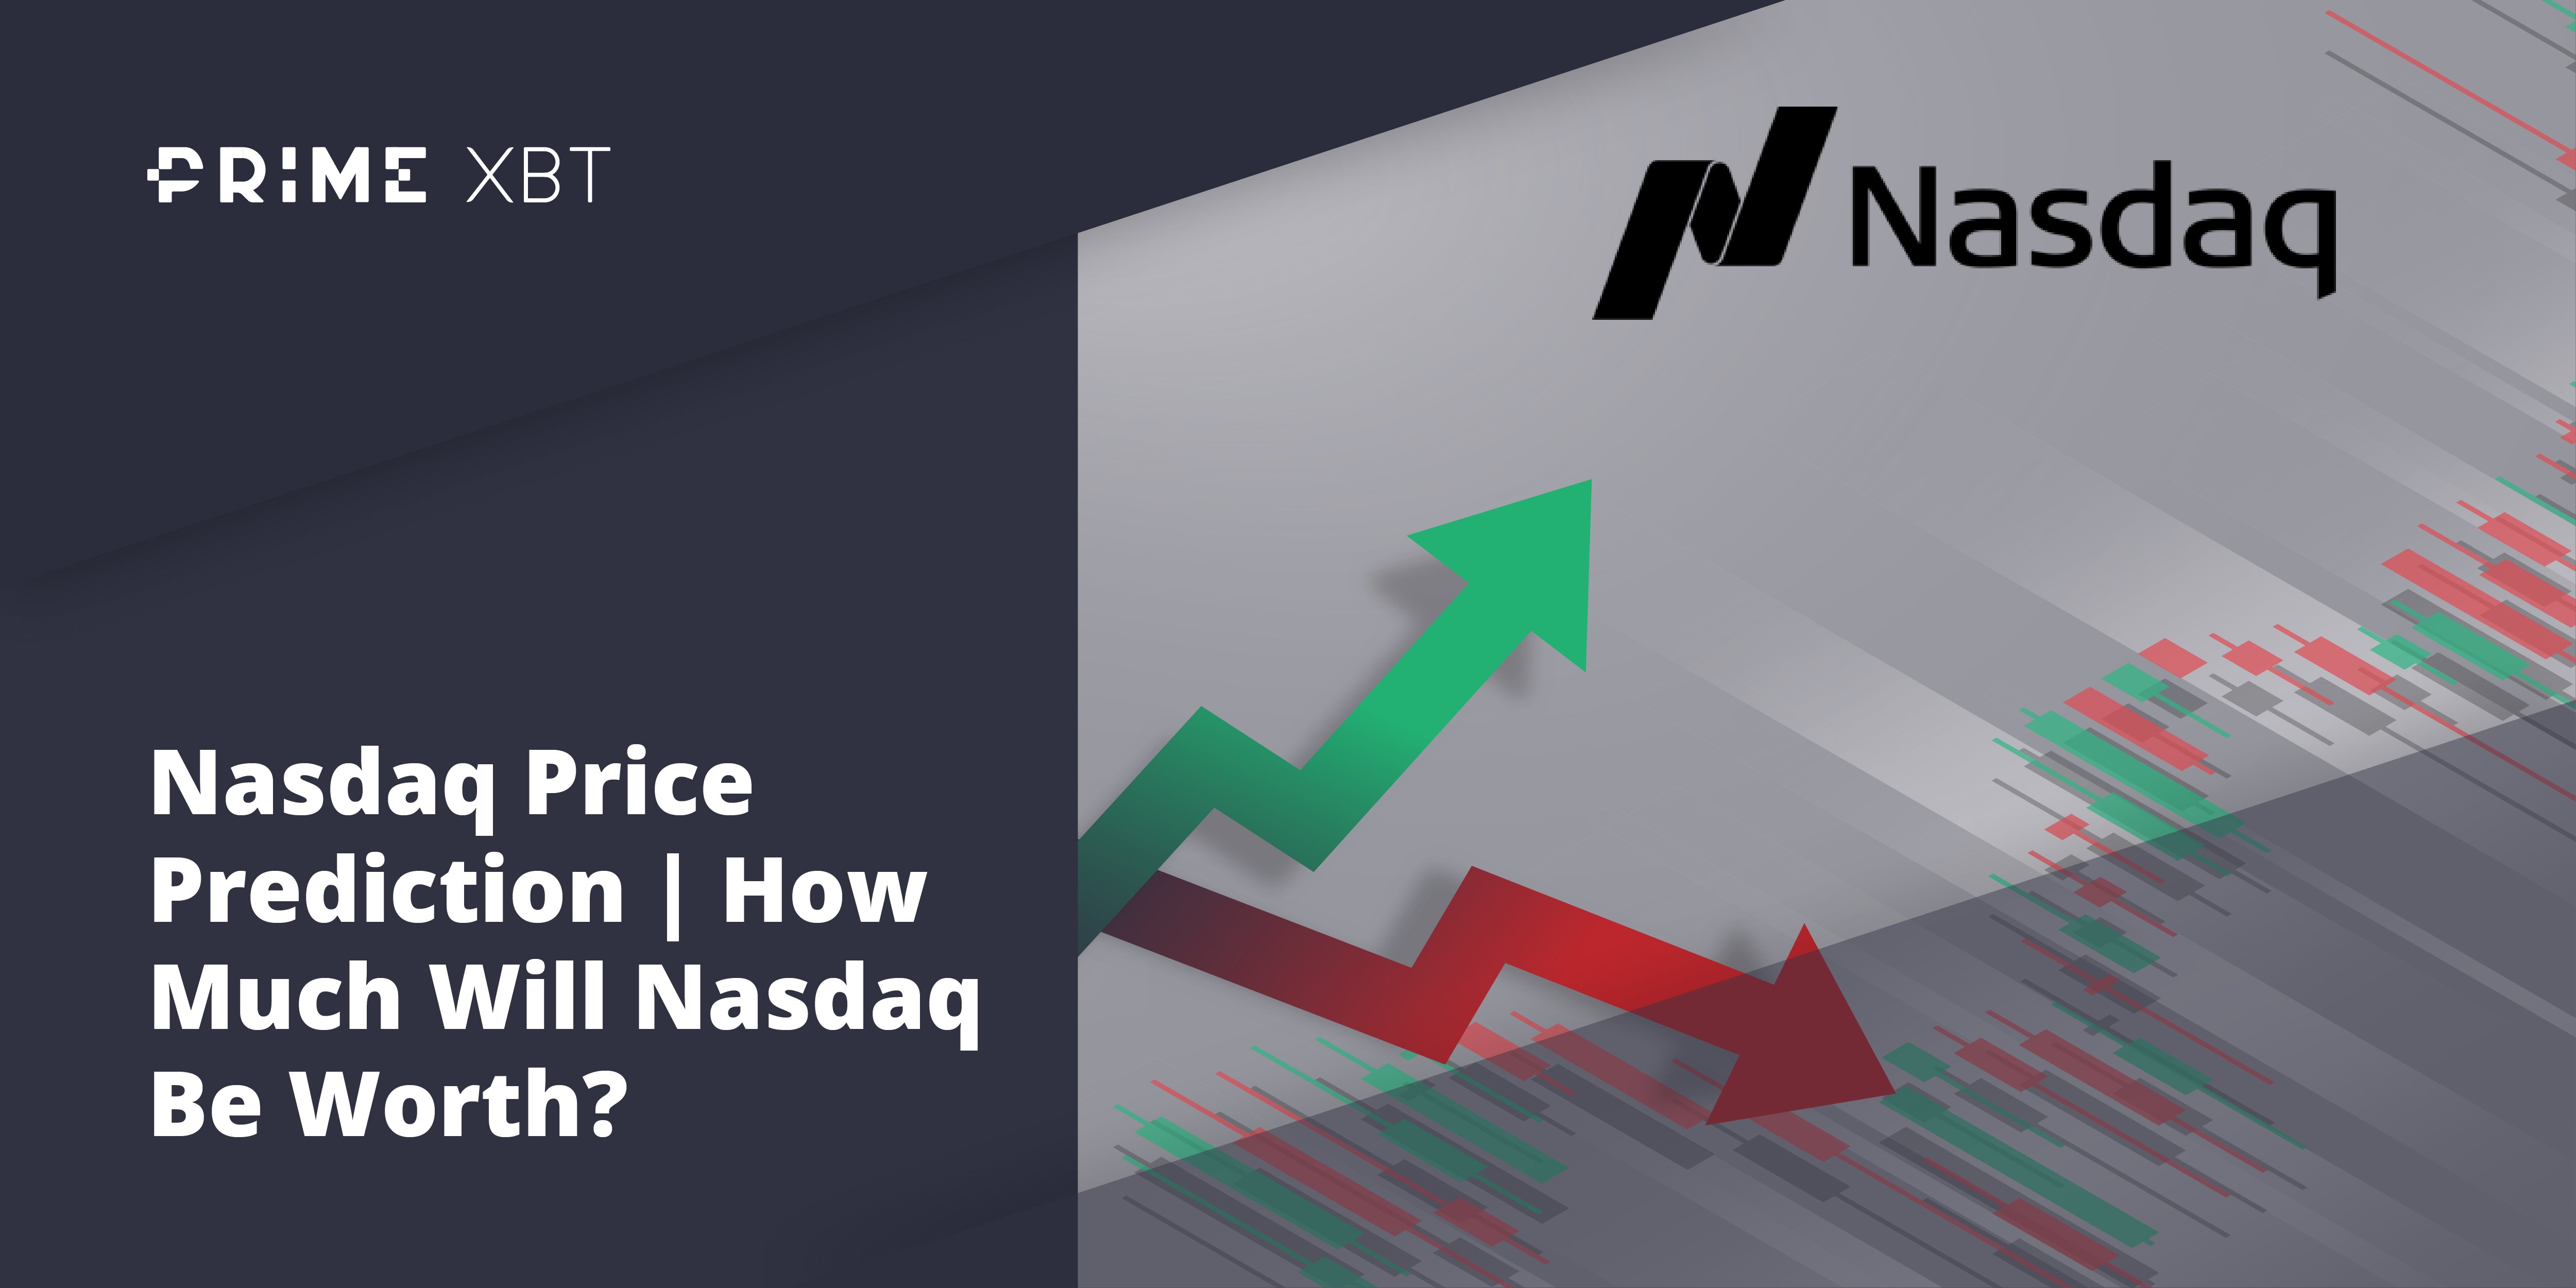 NASDAQ Forecast & Predictions for 2022, 2025 & 2030 - nasdaq